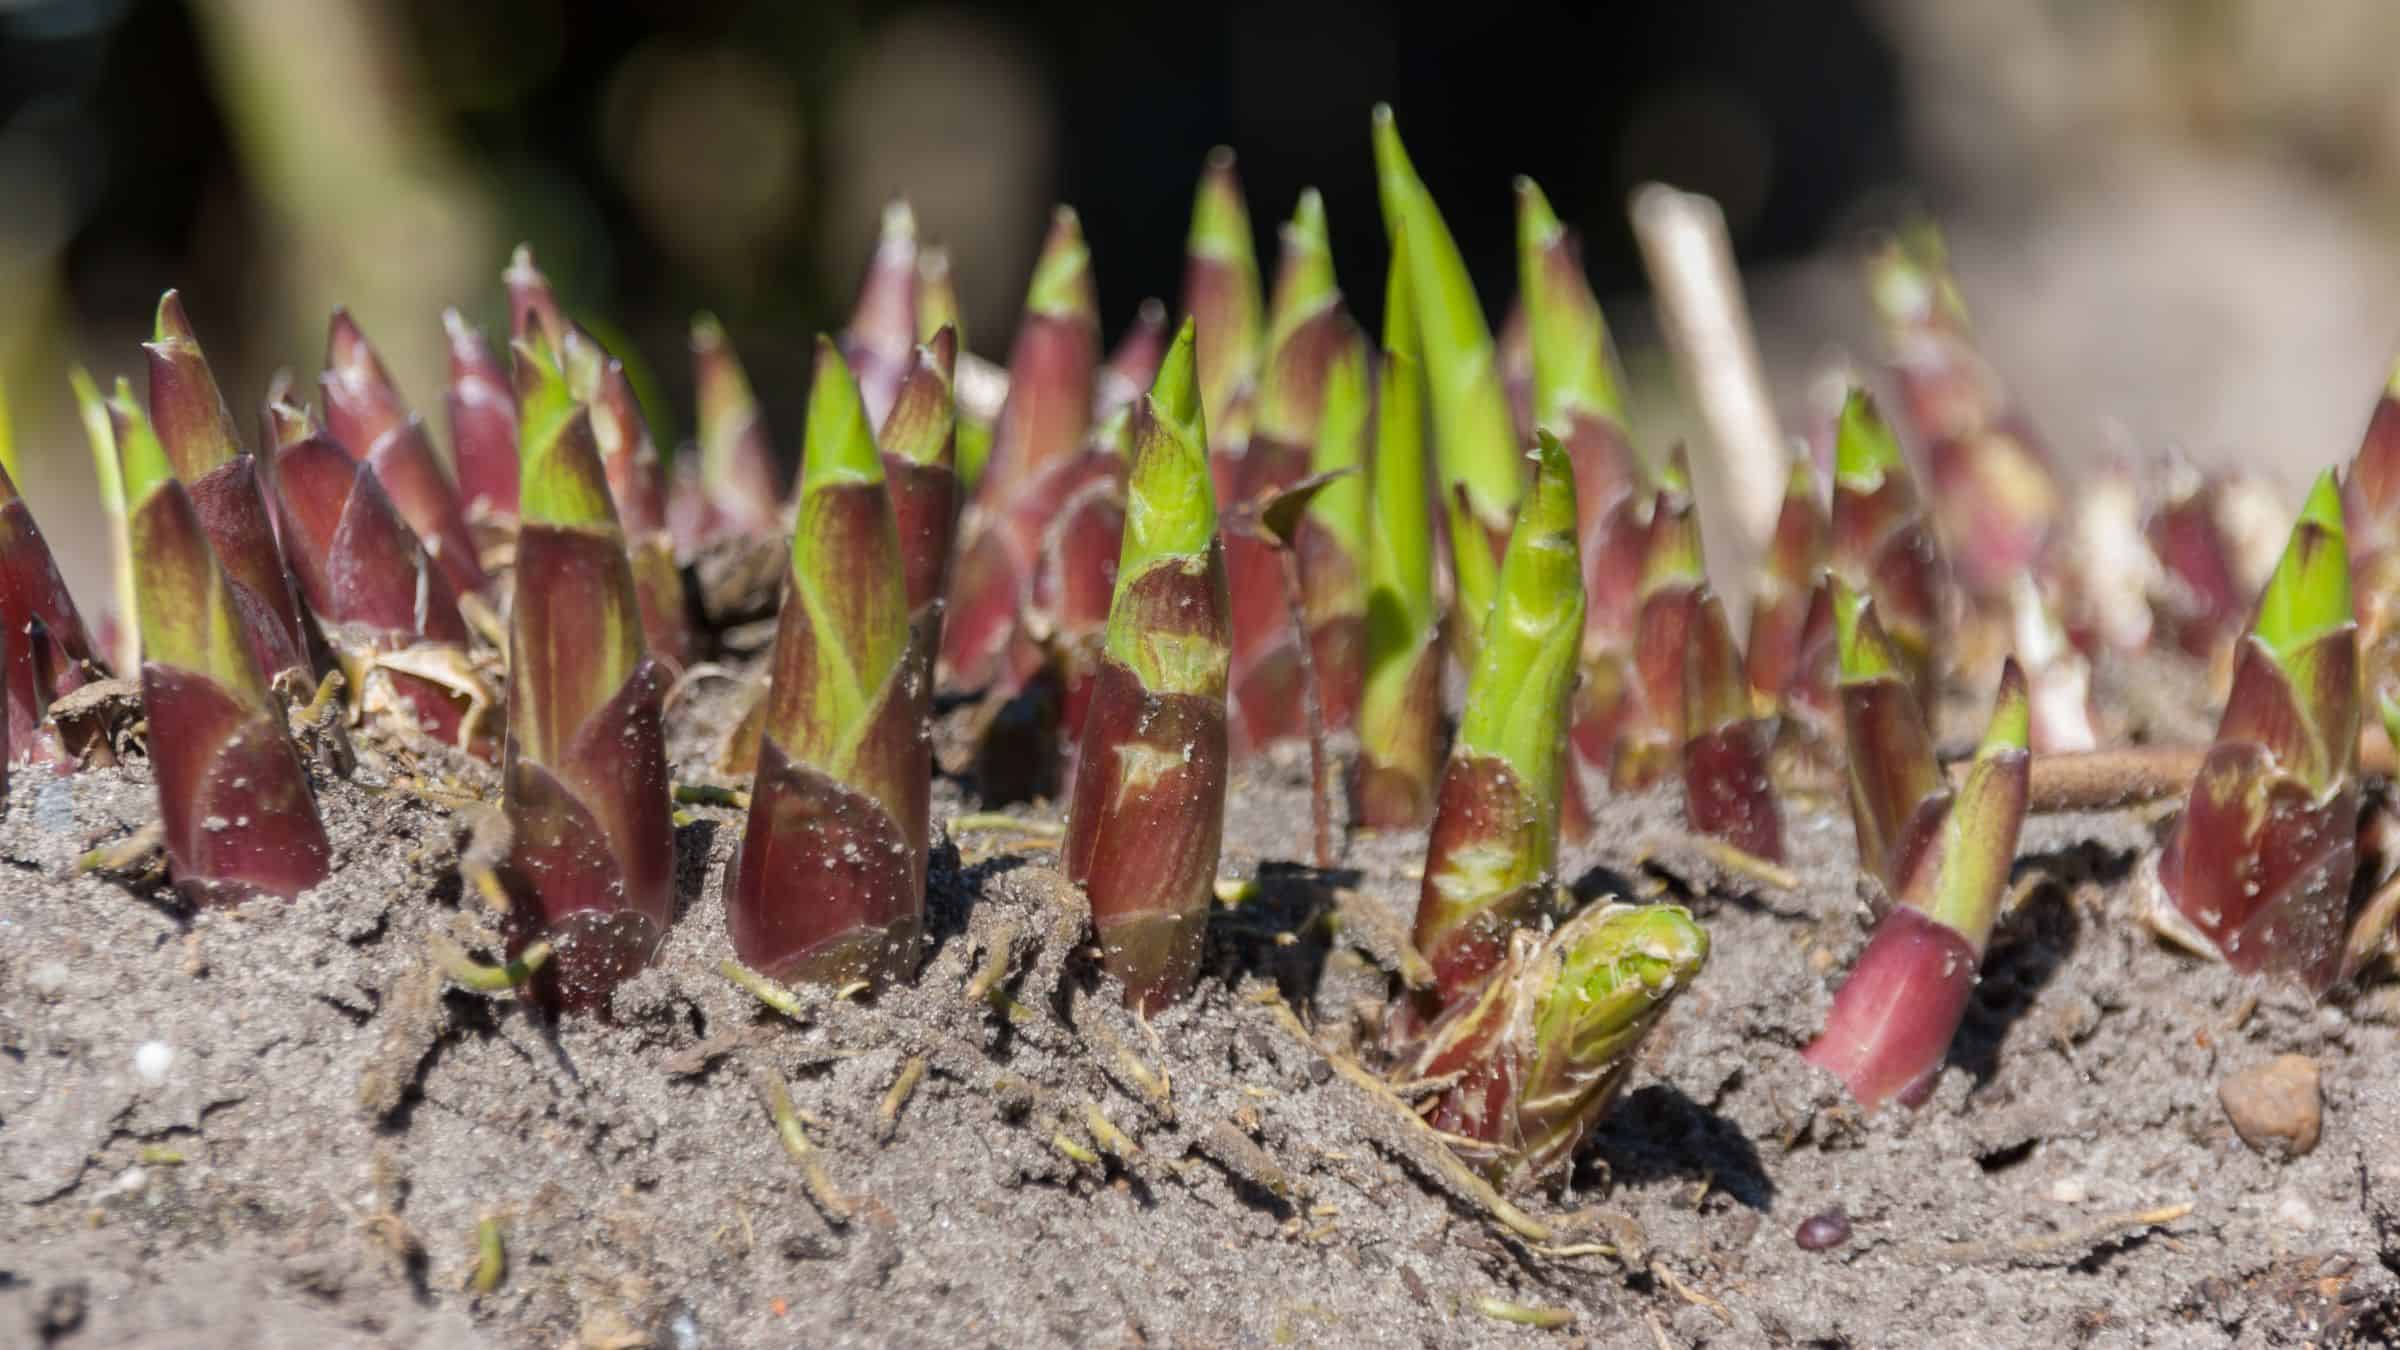 Hosta shoots emerging in sandy soil